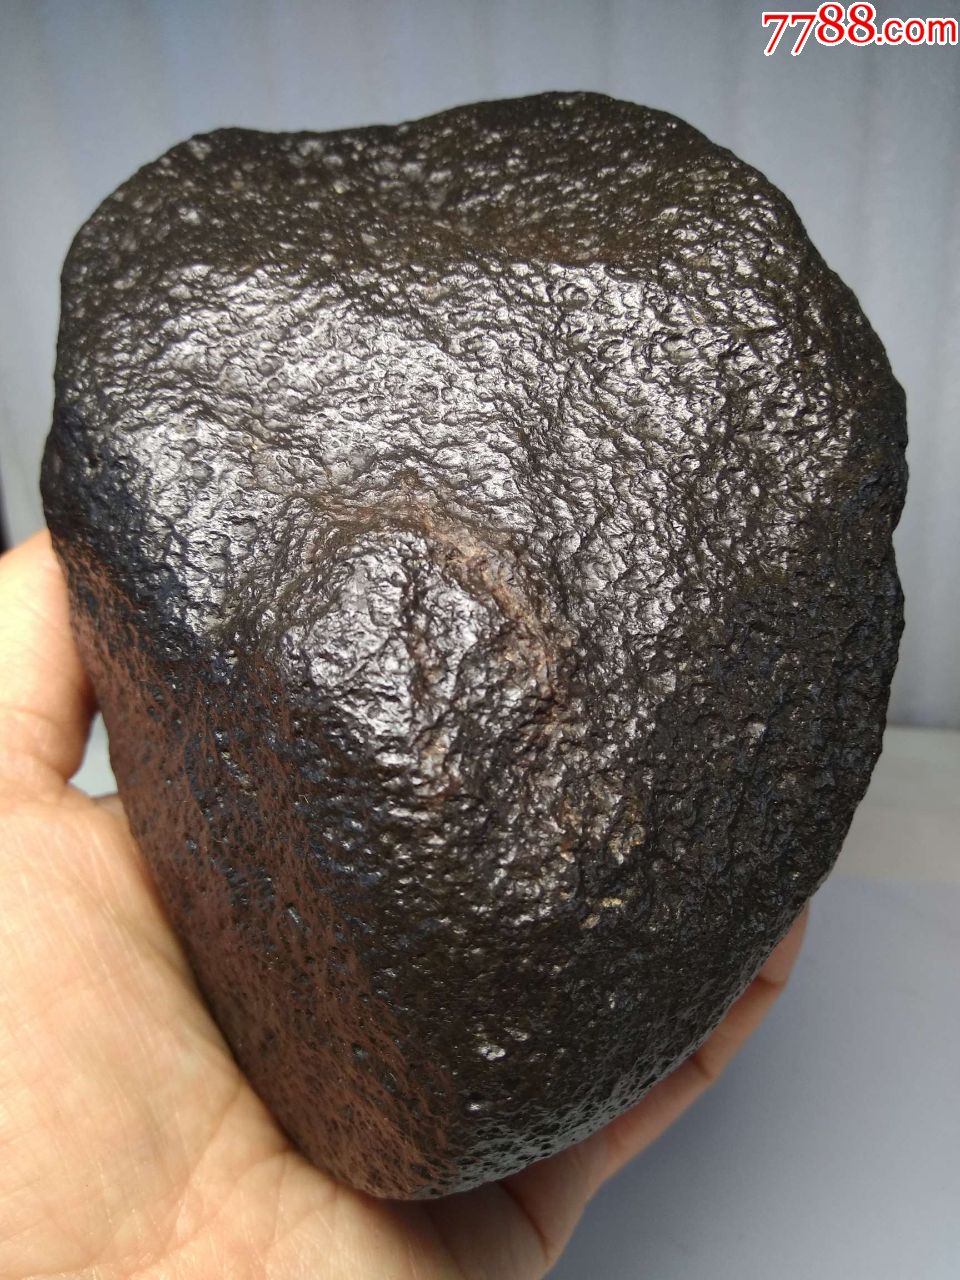 1802收藏级新疆黑珍珠碳质球粒石铁陨石,968克